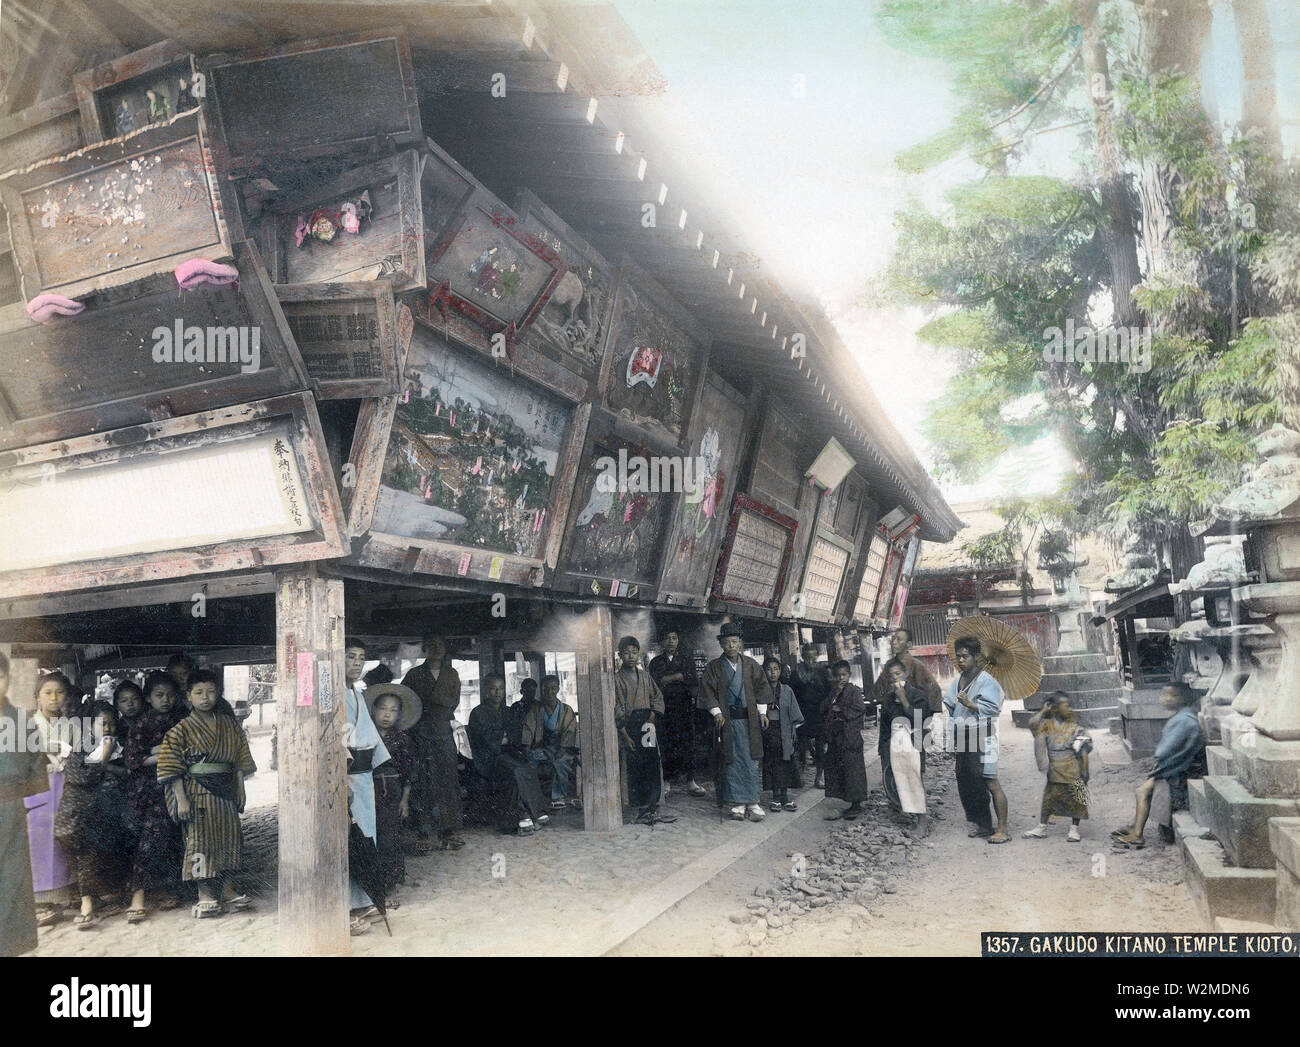 [1880s Japan - Kitano Tenmangu Shrine in Kyoto] - Ema-do der Kitano Tenmangu in Kamigyo-ku, Kyoto. Ema sind kleine Holz- Plaketten, Anfragen übermitteln an die Götter, oder Dank für Wünsche gewährt. Viele Tempel und Schreine errichtet besondere Gebäude, genannt ema-tun, für diese Plaques. Die Kitano Tenmangu Ema - eine wichtige Rolle spielte als Galerie, wo viele schöne Ema bewundert werden konnte. Kitano Tenmangu ist ein wichtiger Shinto Schrein in 947 gründete die wütenden Geist des Gelehrten, Dichter zu beschwichtigen, und Politiker Sugawara no Michizane (845 - 903). 19 Vintage albumen Foto. Stockfoto